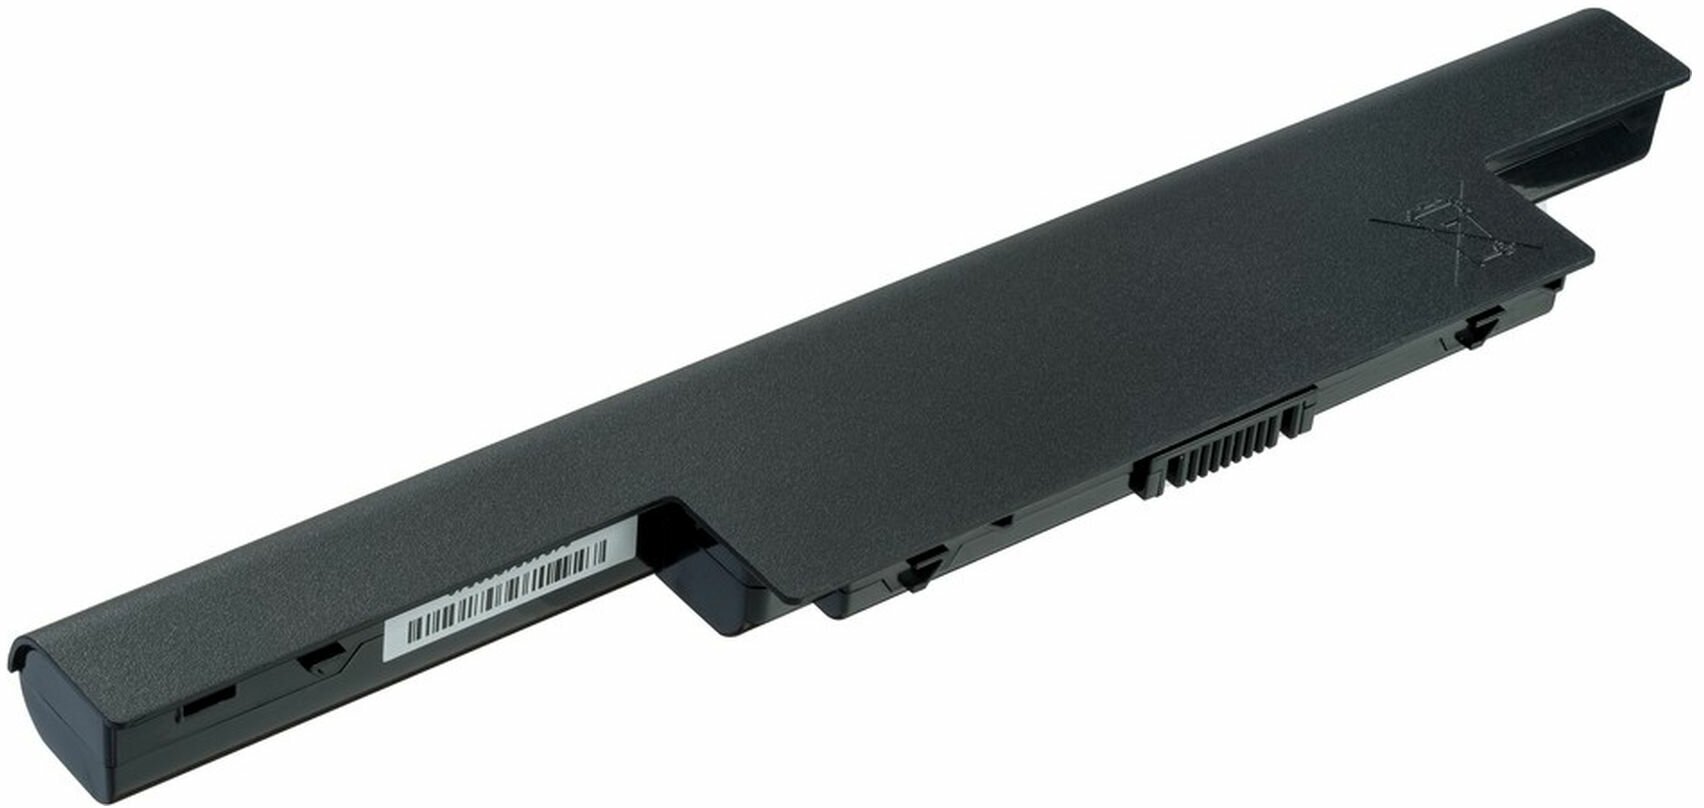 Аккумуляторная батарея Pitatel BT-071 для ноутбуков Acer (AS10D31, AS10D75, AS10D41, AS10D61, AS10D71), 4400мАч